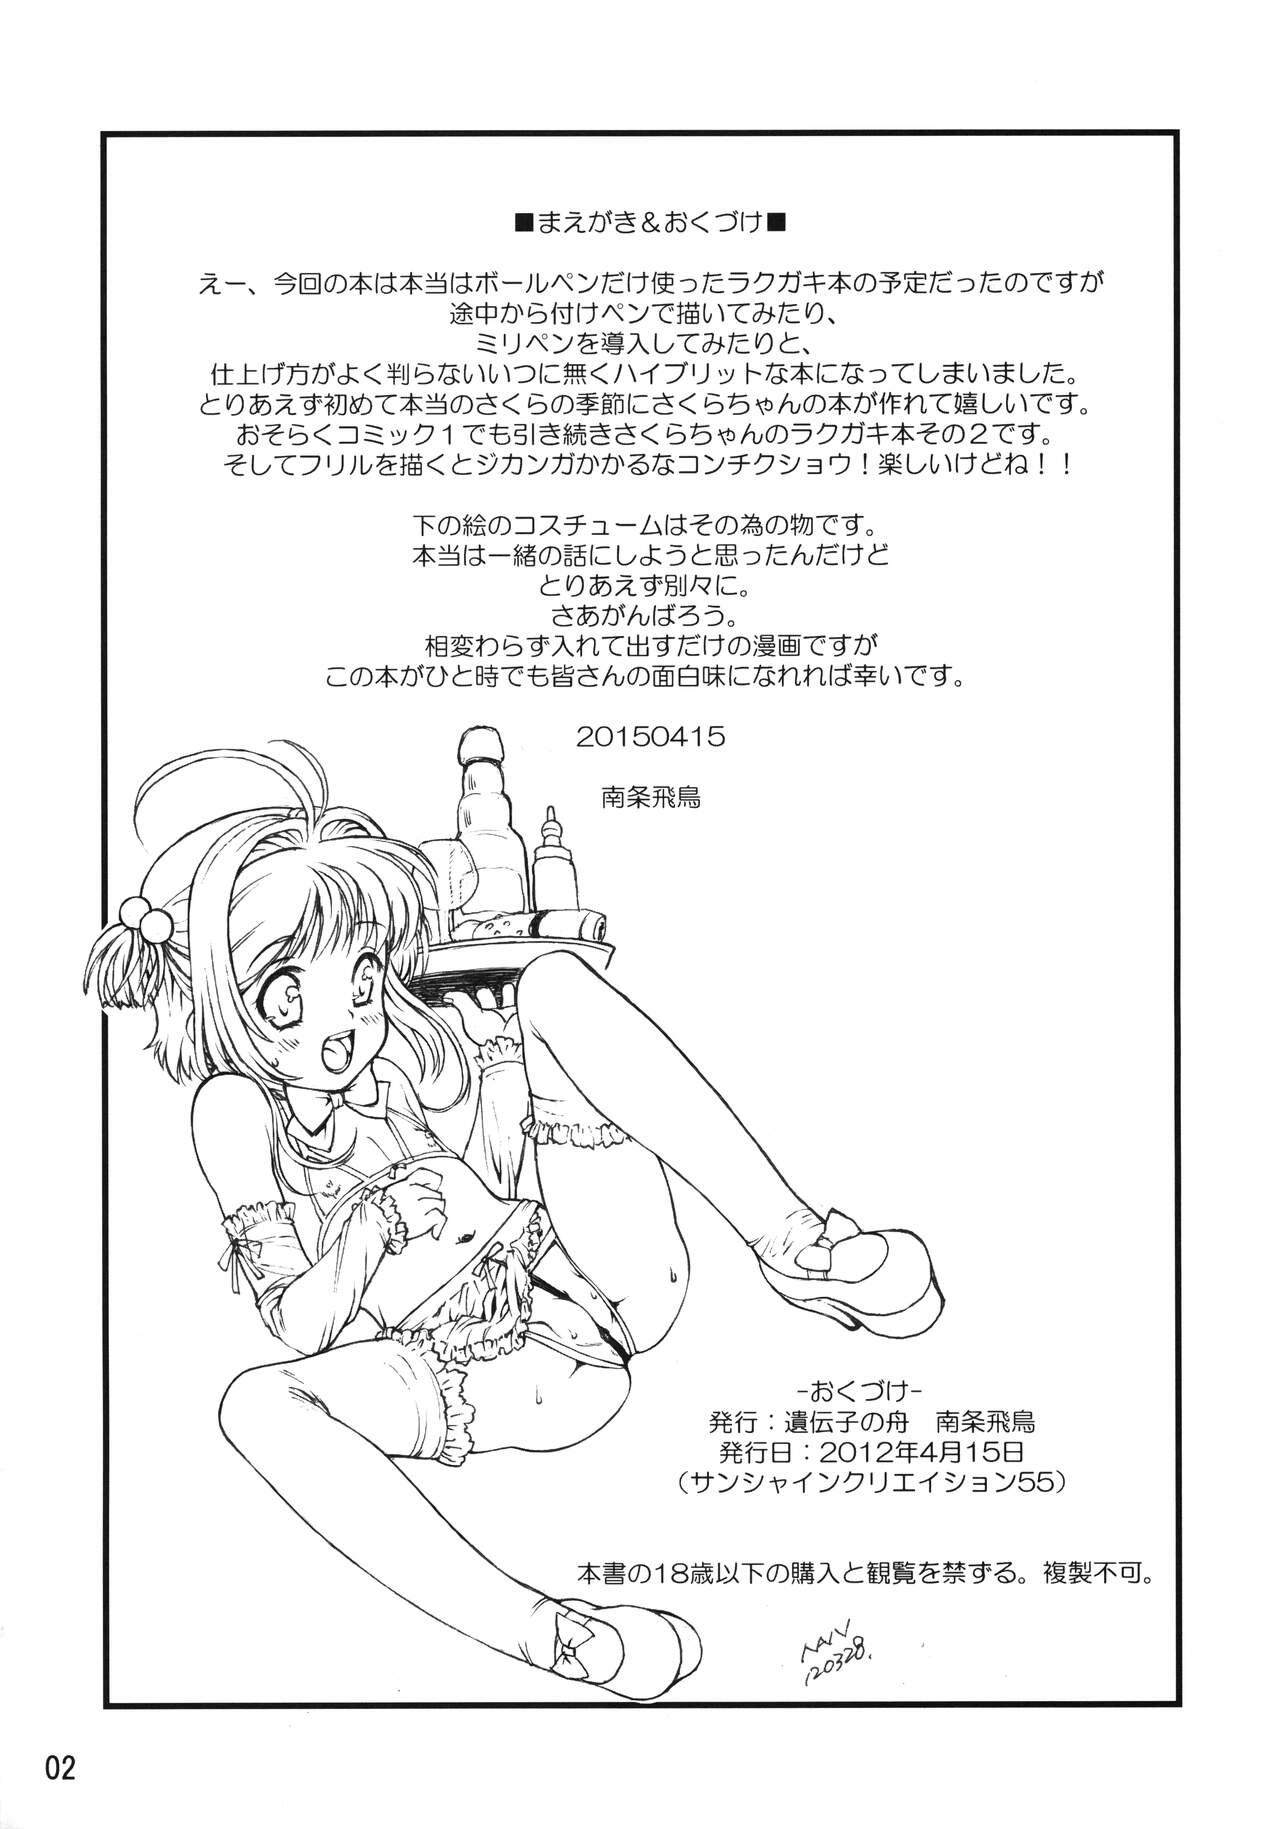 Passivo Mankai Sakura - Cardcaptor sakura Peluda - Page 2